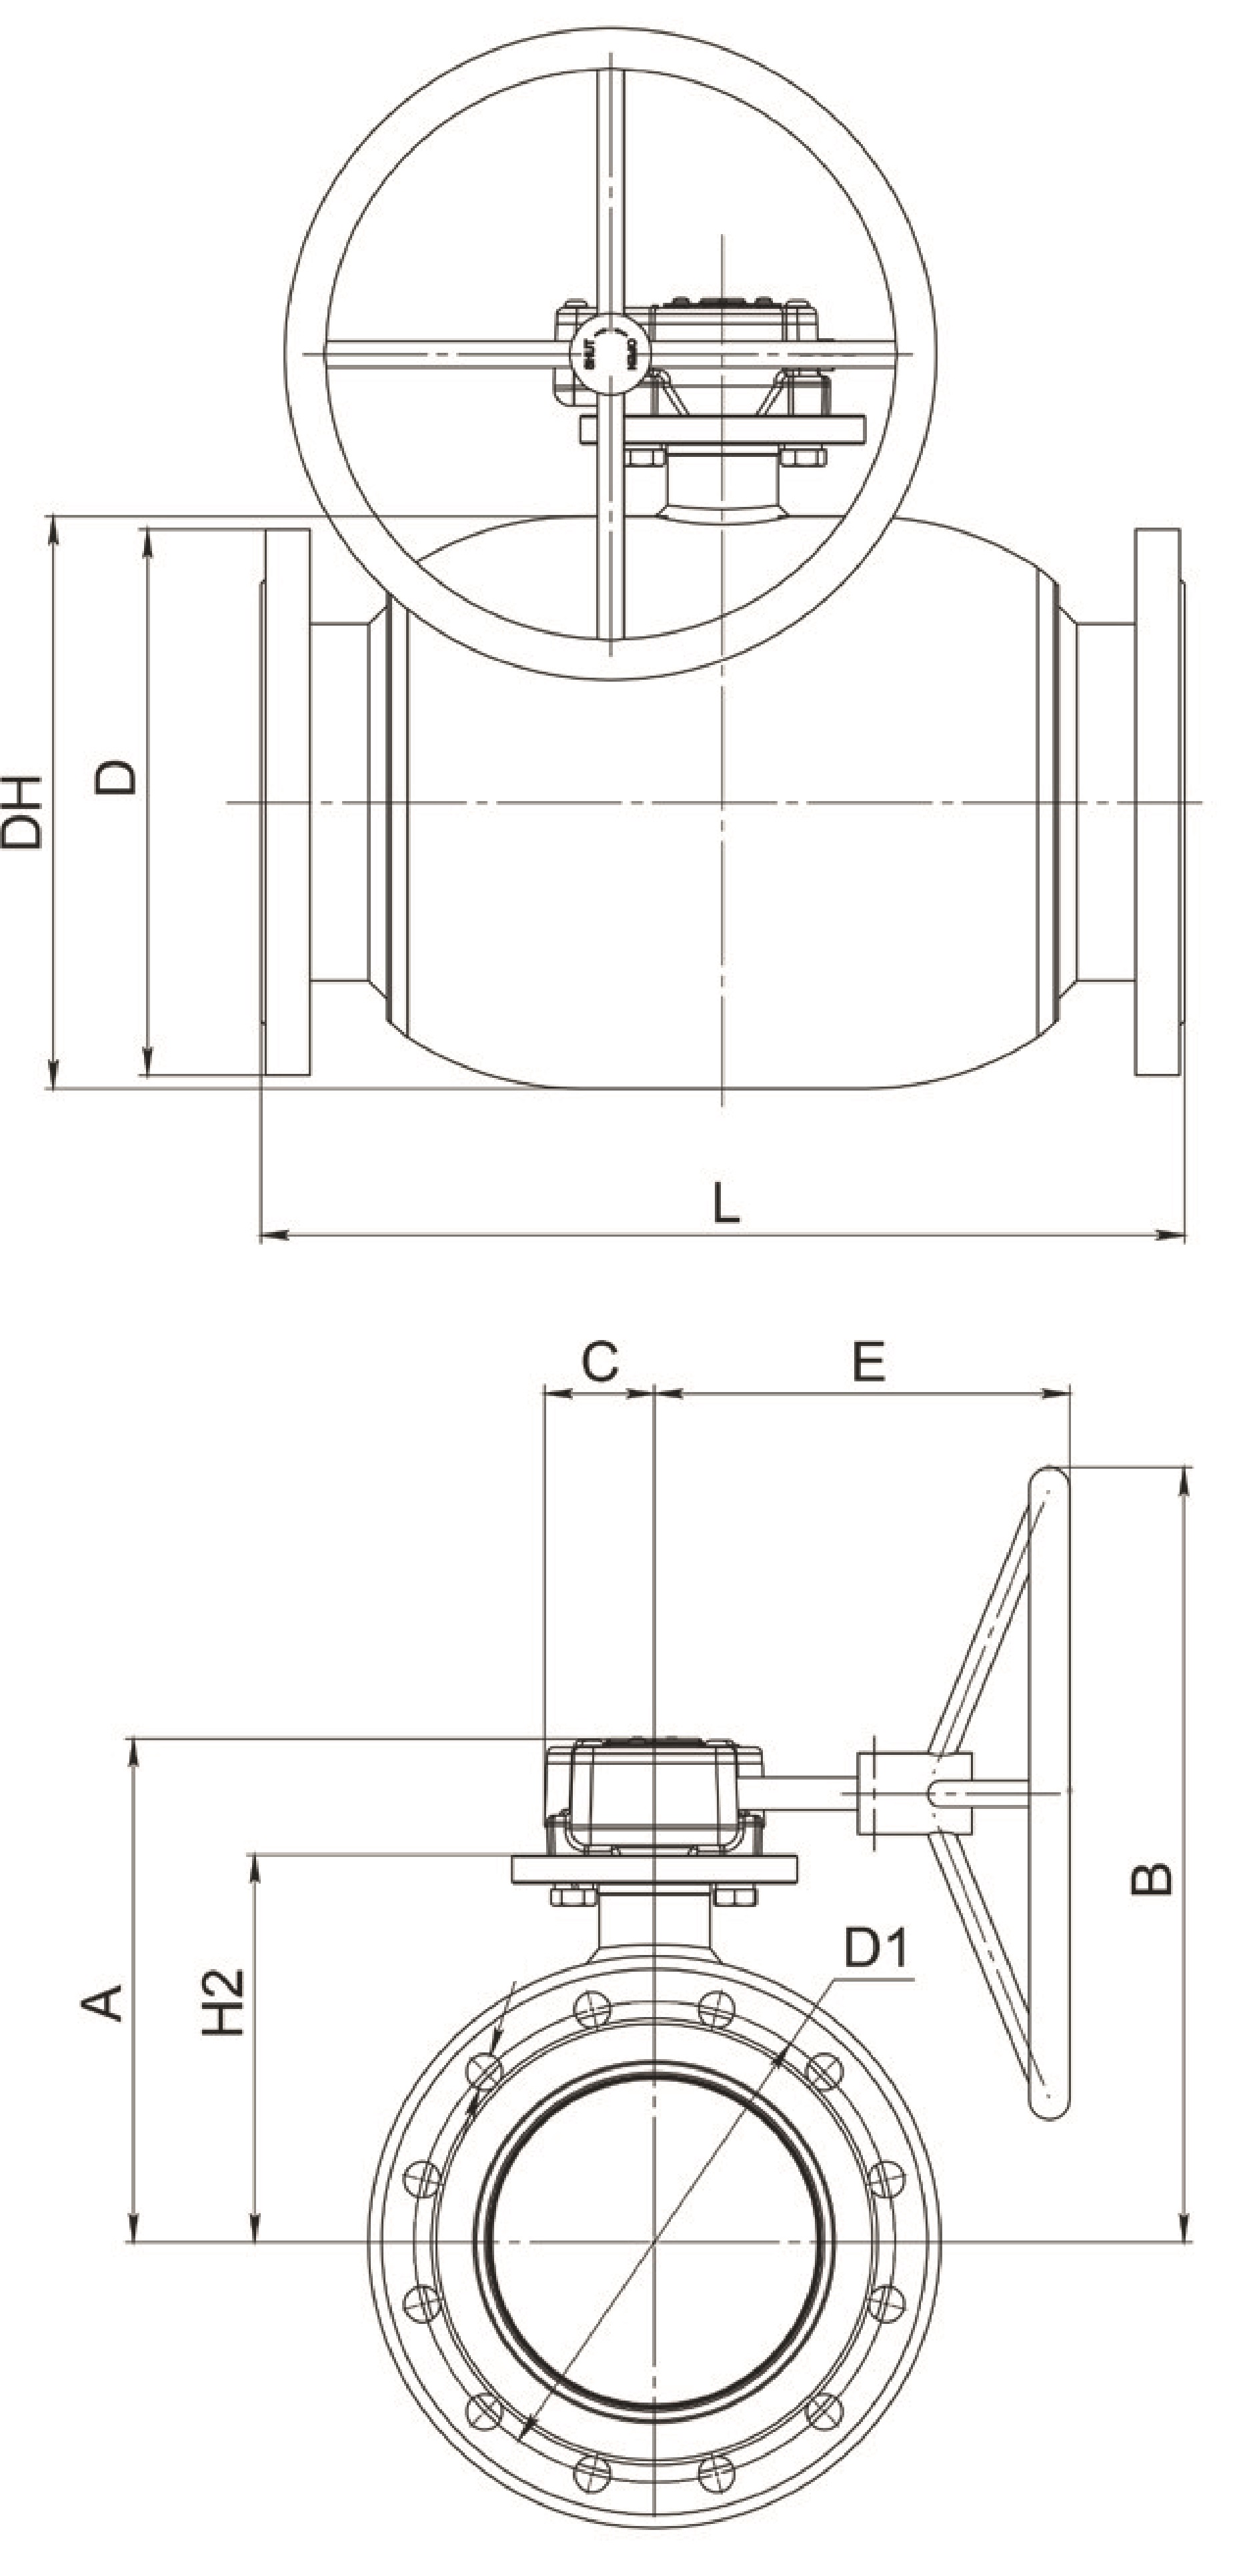 Кран шаровый Broen Ballomax-КШТ61.113.Р.16 Ду200 Ру16 полнопроходный с плавающим шаром, с ISO фланцем, корпус - сталь, уплотнение - EPDM, фланцевый, с редуктором